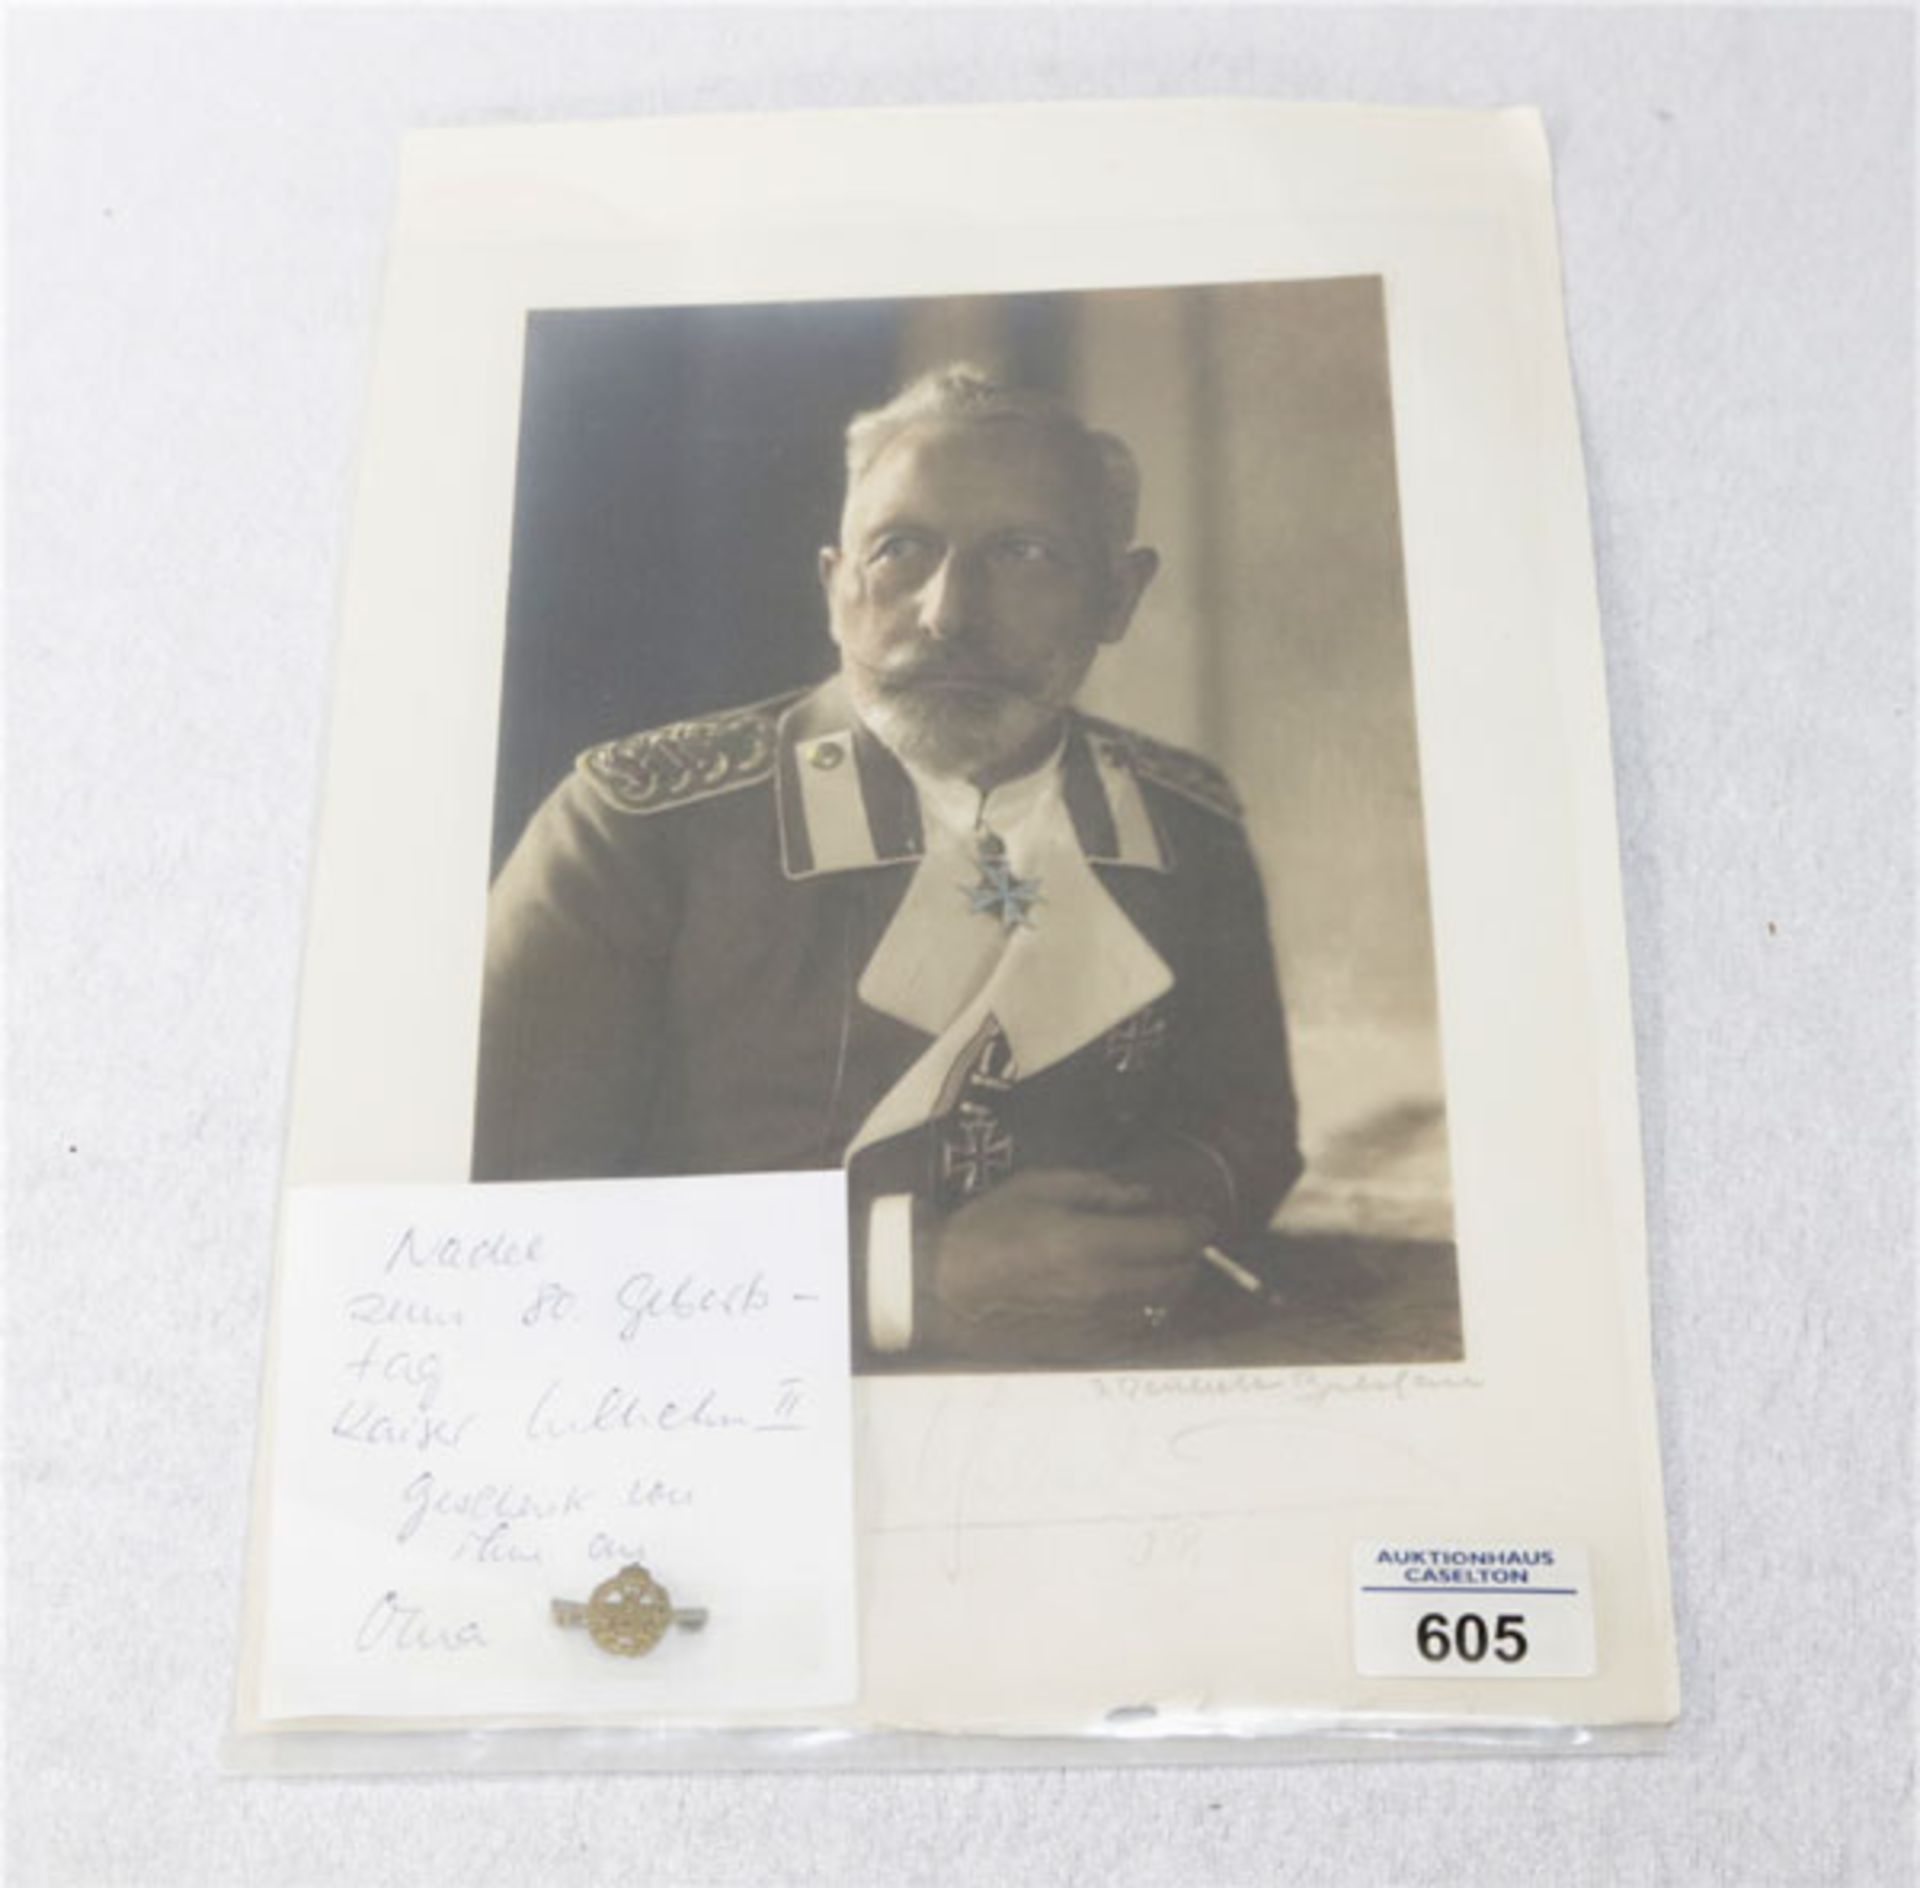 Foto von Kaiser Wilhelm II. mit Signatur und eine Nadel, wurde nur an seinem 80. Gebrutstag an seine